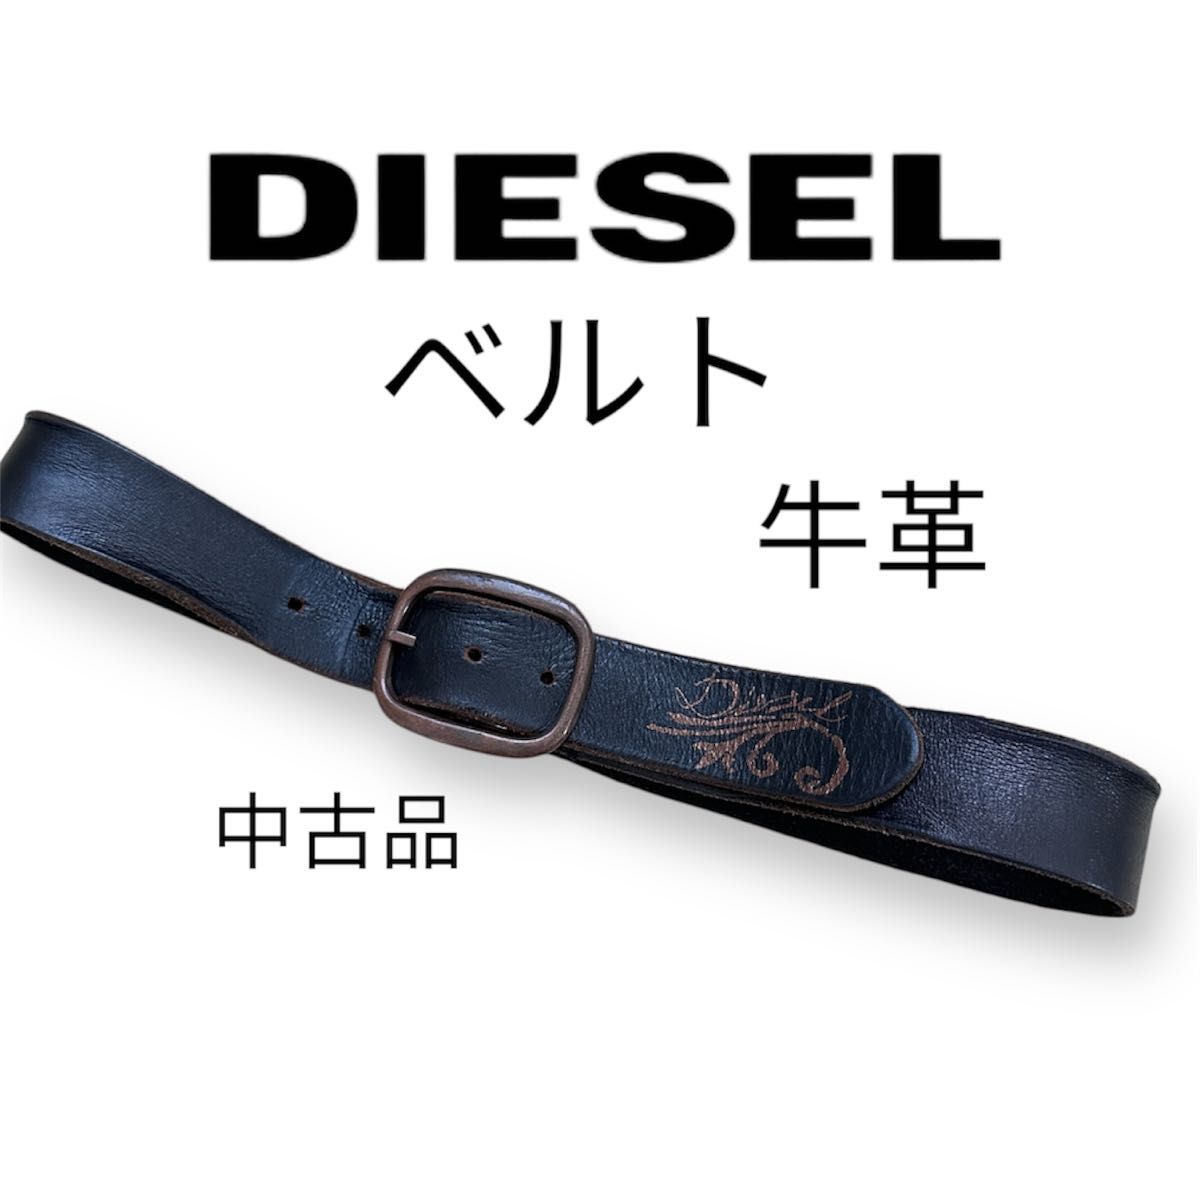 【DIESEL】ディーゼル 牛革  カジュアル ベルト ブランド  アメカジ レザーベルト  黒 デザイン  レザー ヴィンテージ